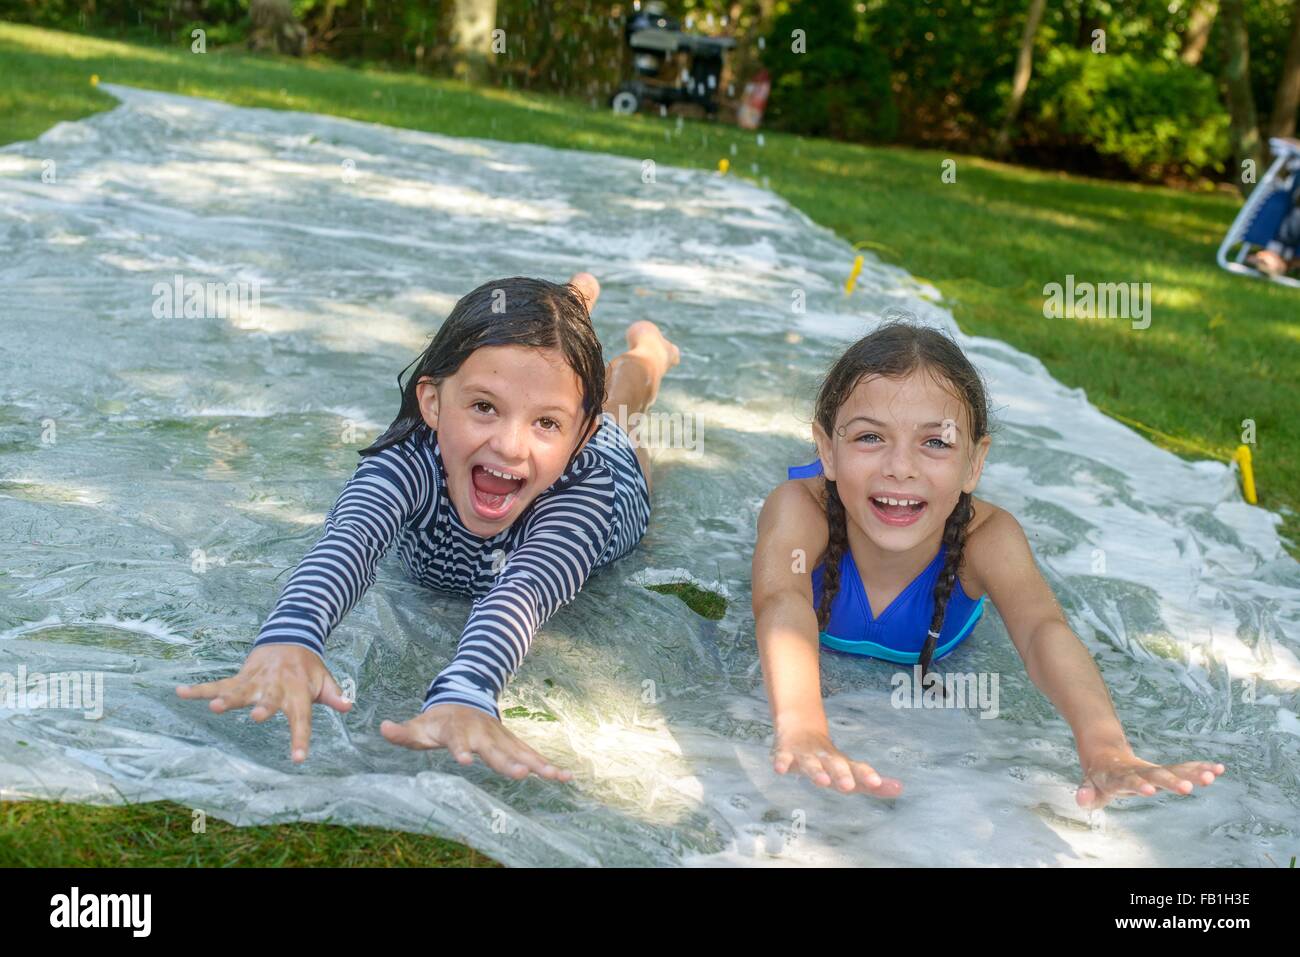 Two girls sliding on slip n slide water mat in garden Stock Photo